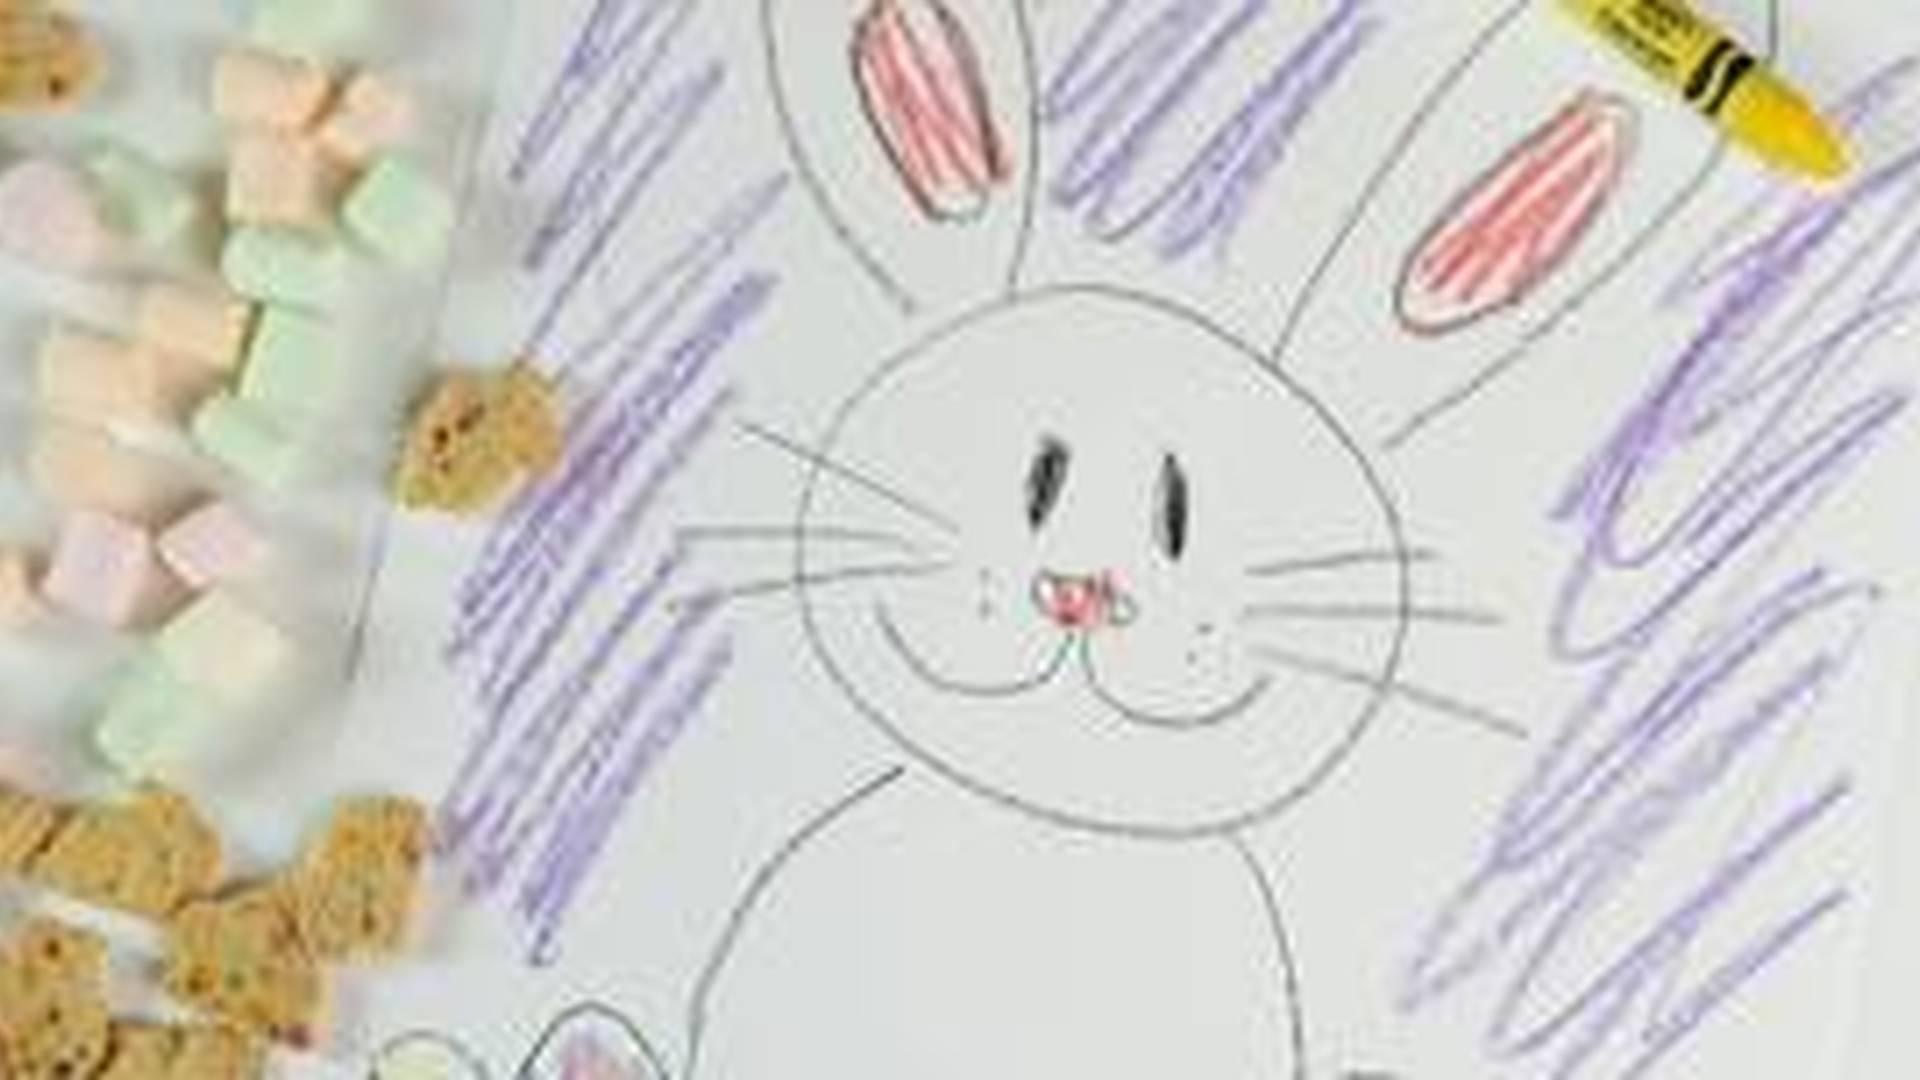 Easter Fun Drawing Club photo